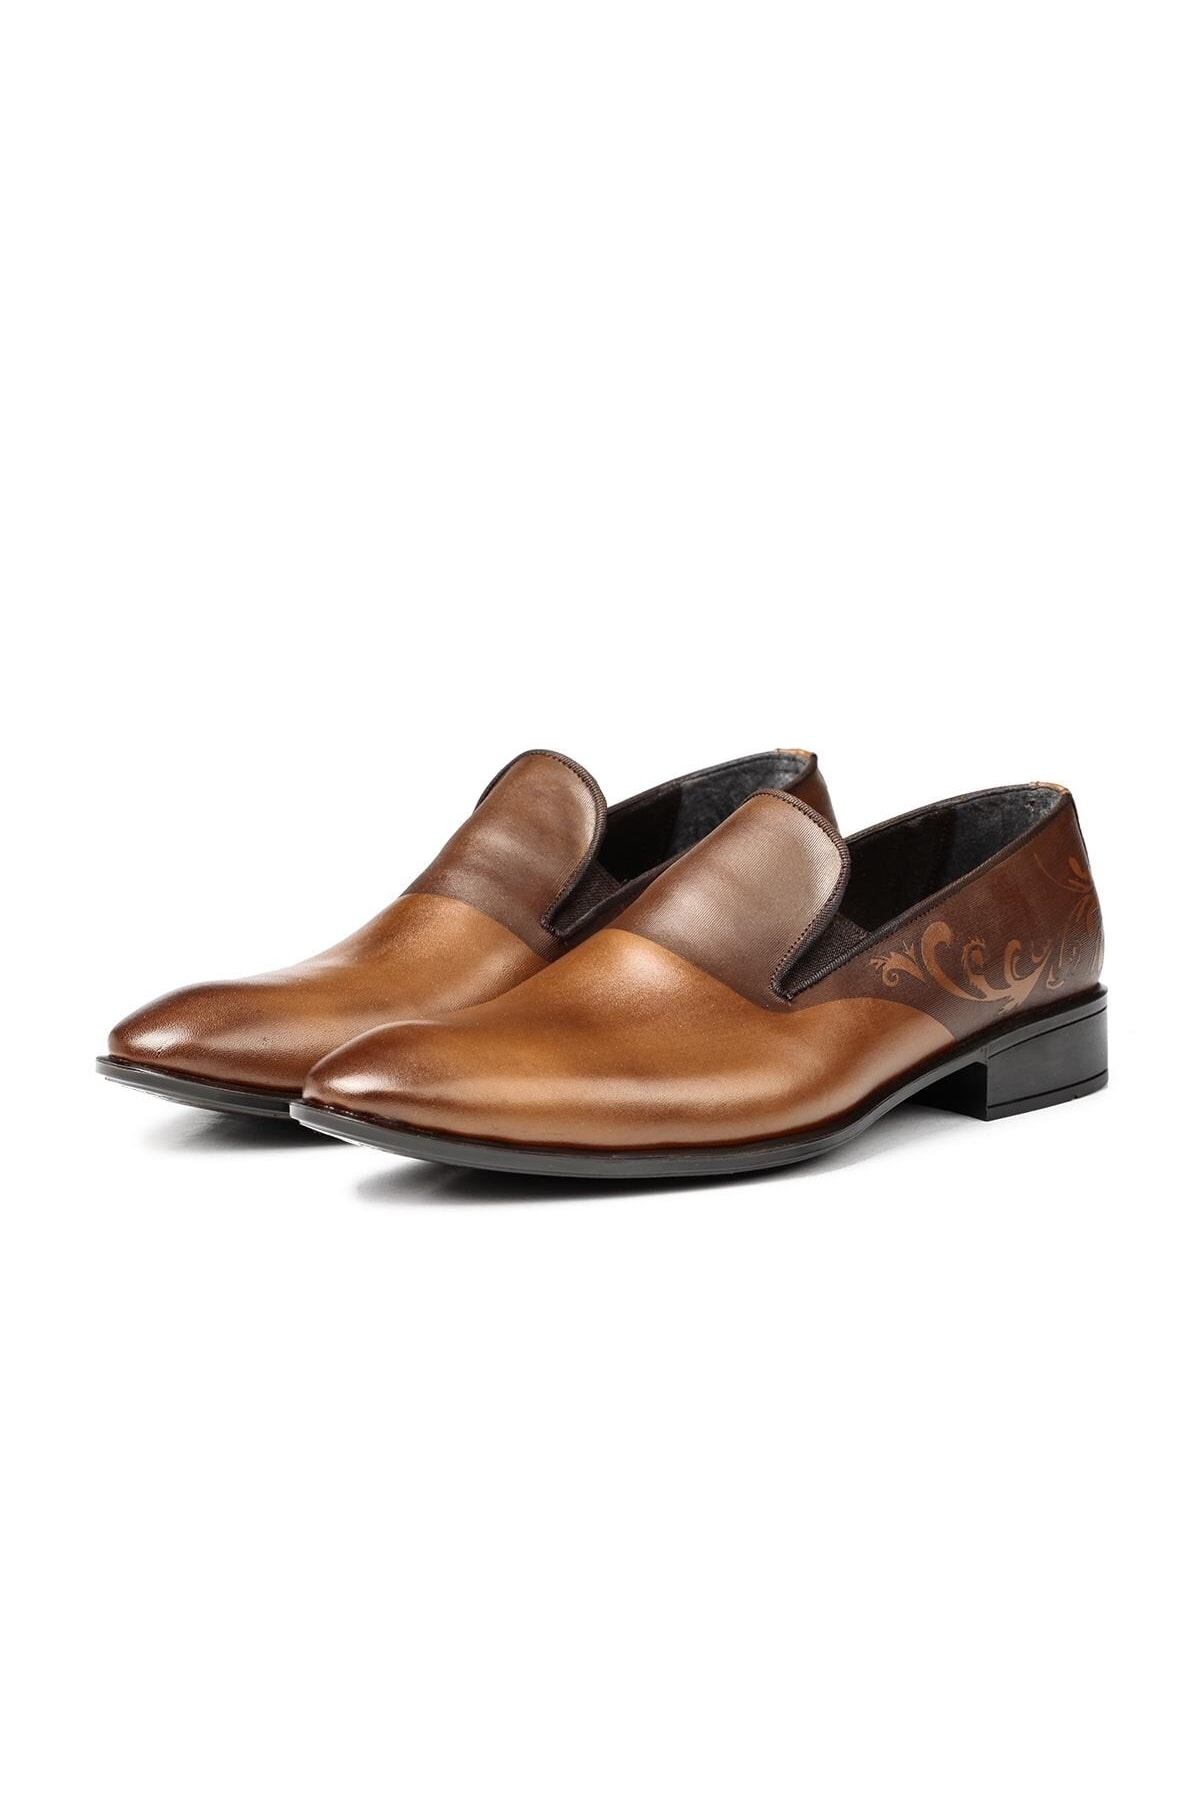 Ducavelli Gentle Genuine Leather Men's Classic Shoes, Loafers Classic Shoes, Loafers.